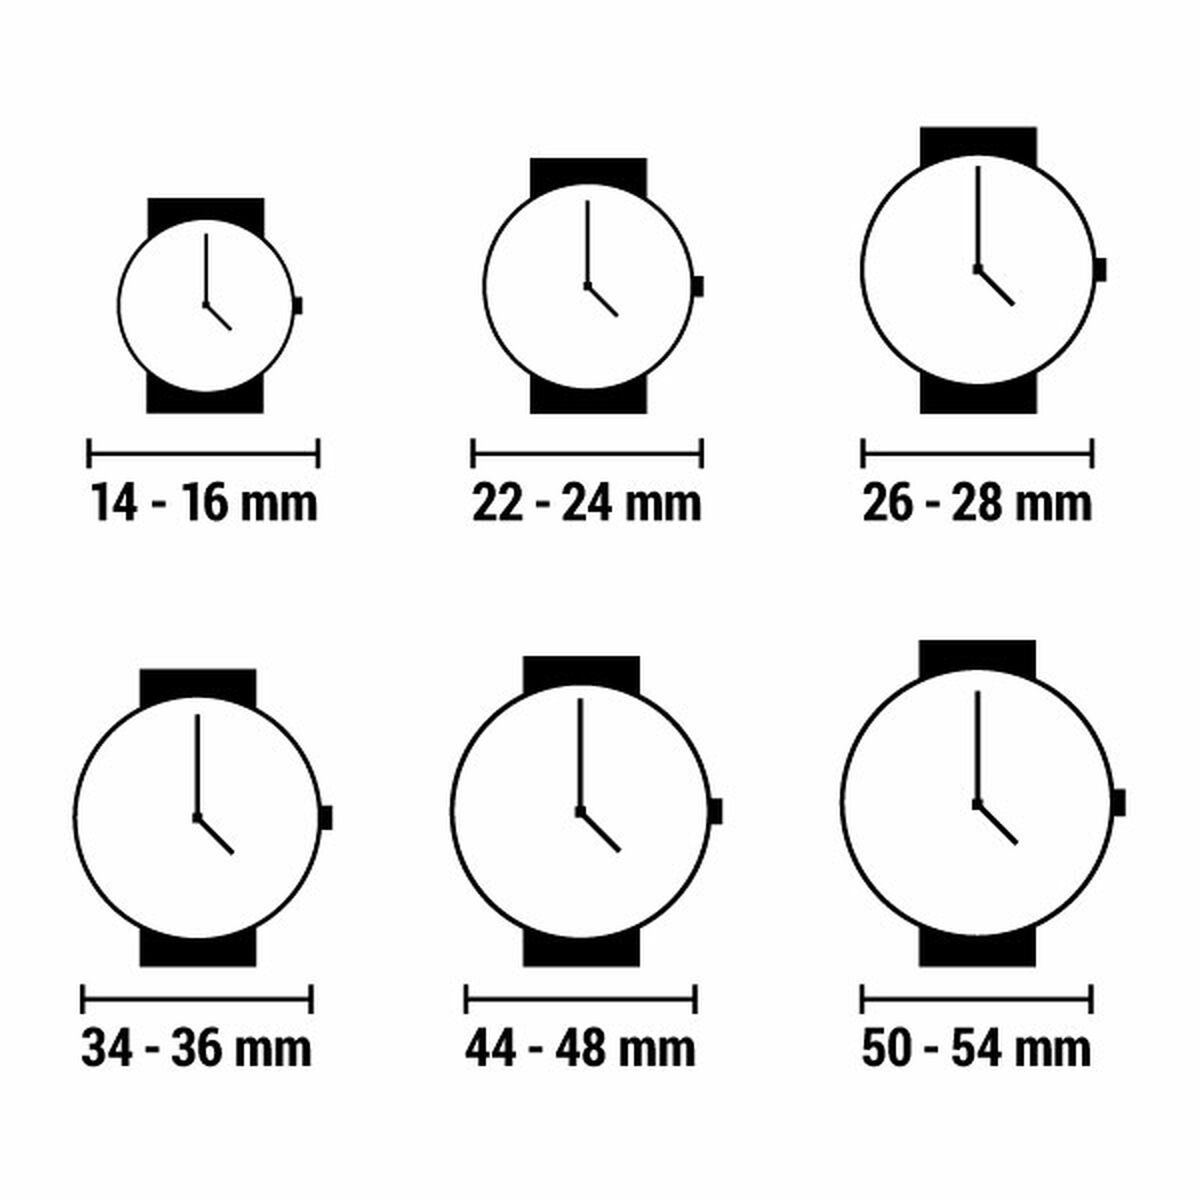 Horloge Dames Radiant (Ø 44,5 mm)